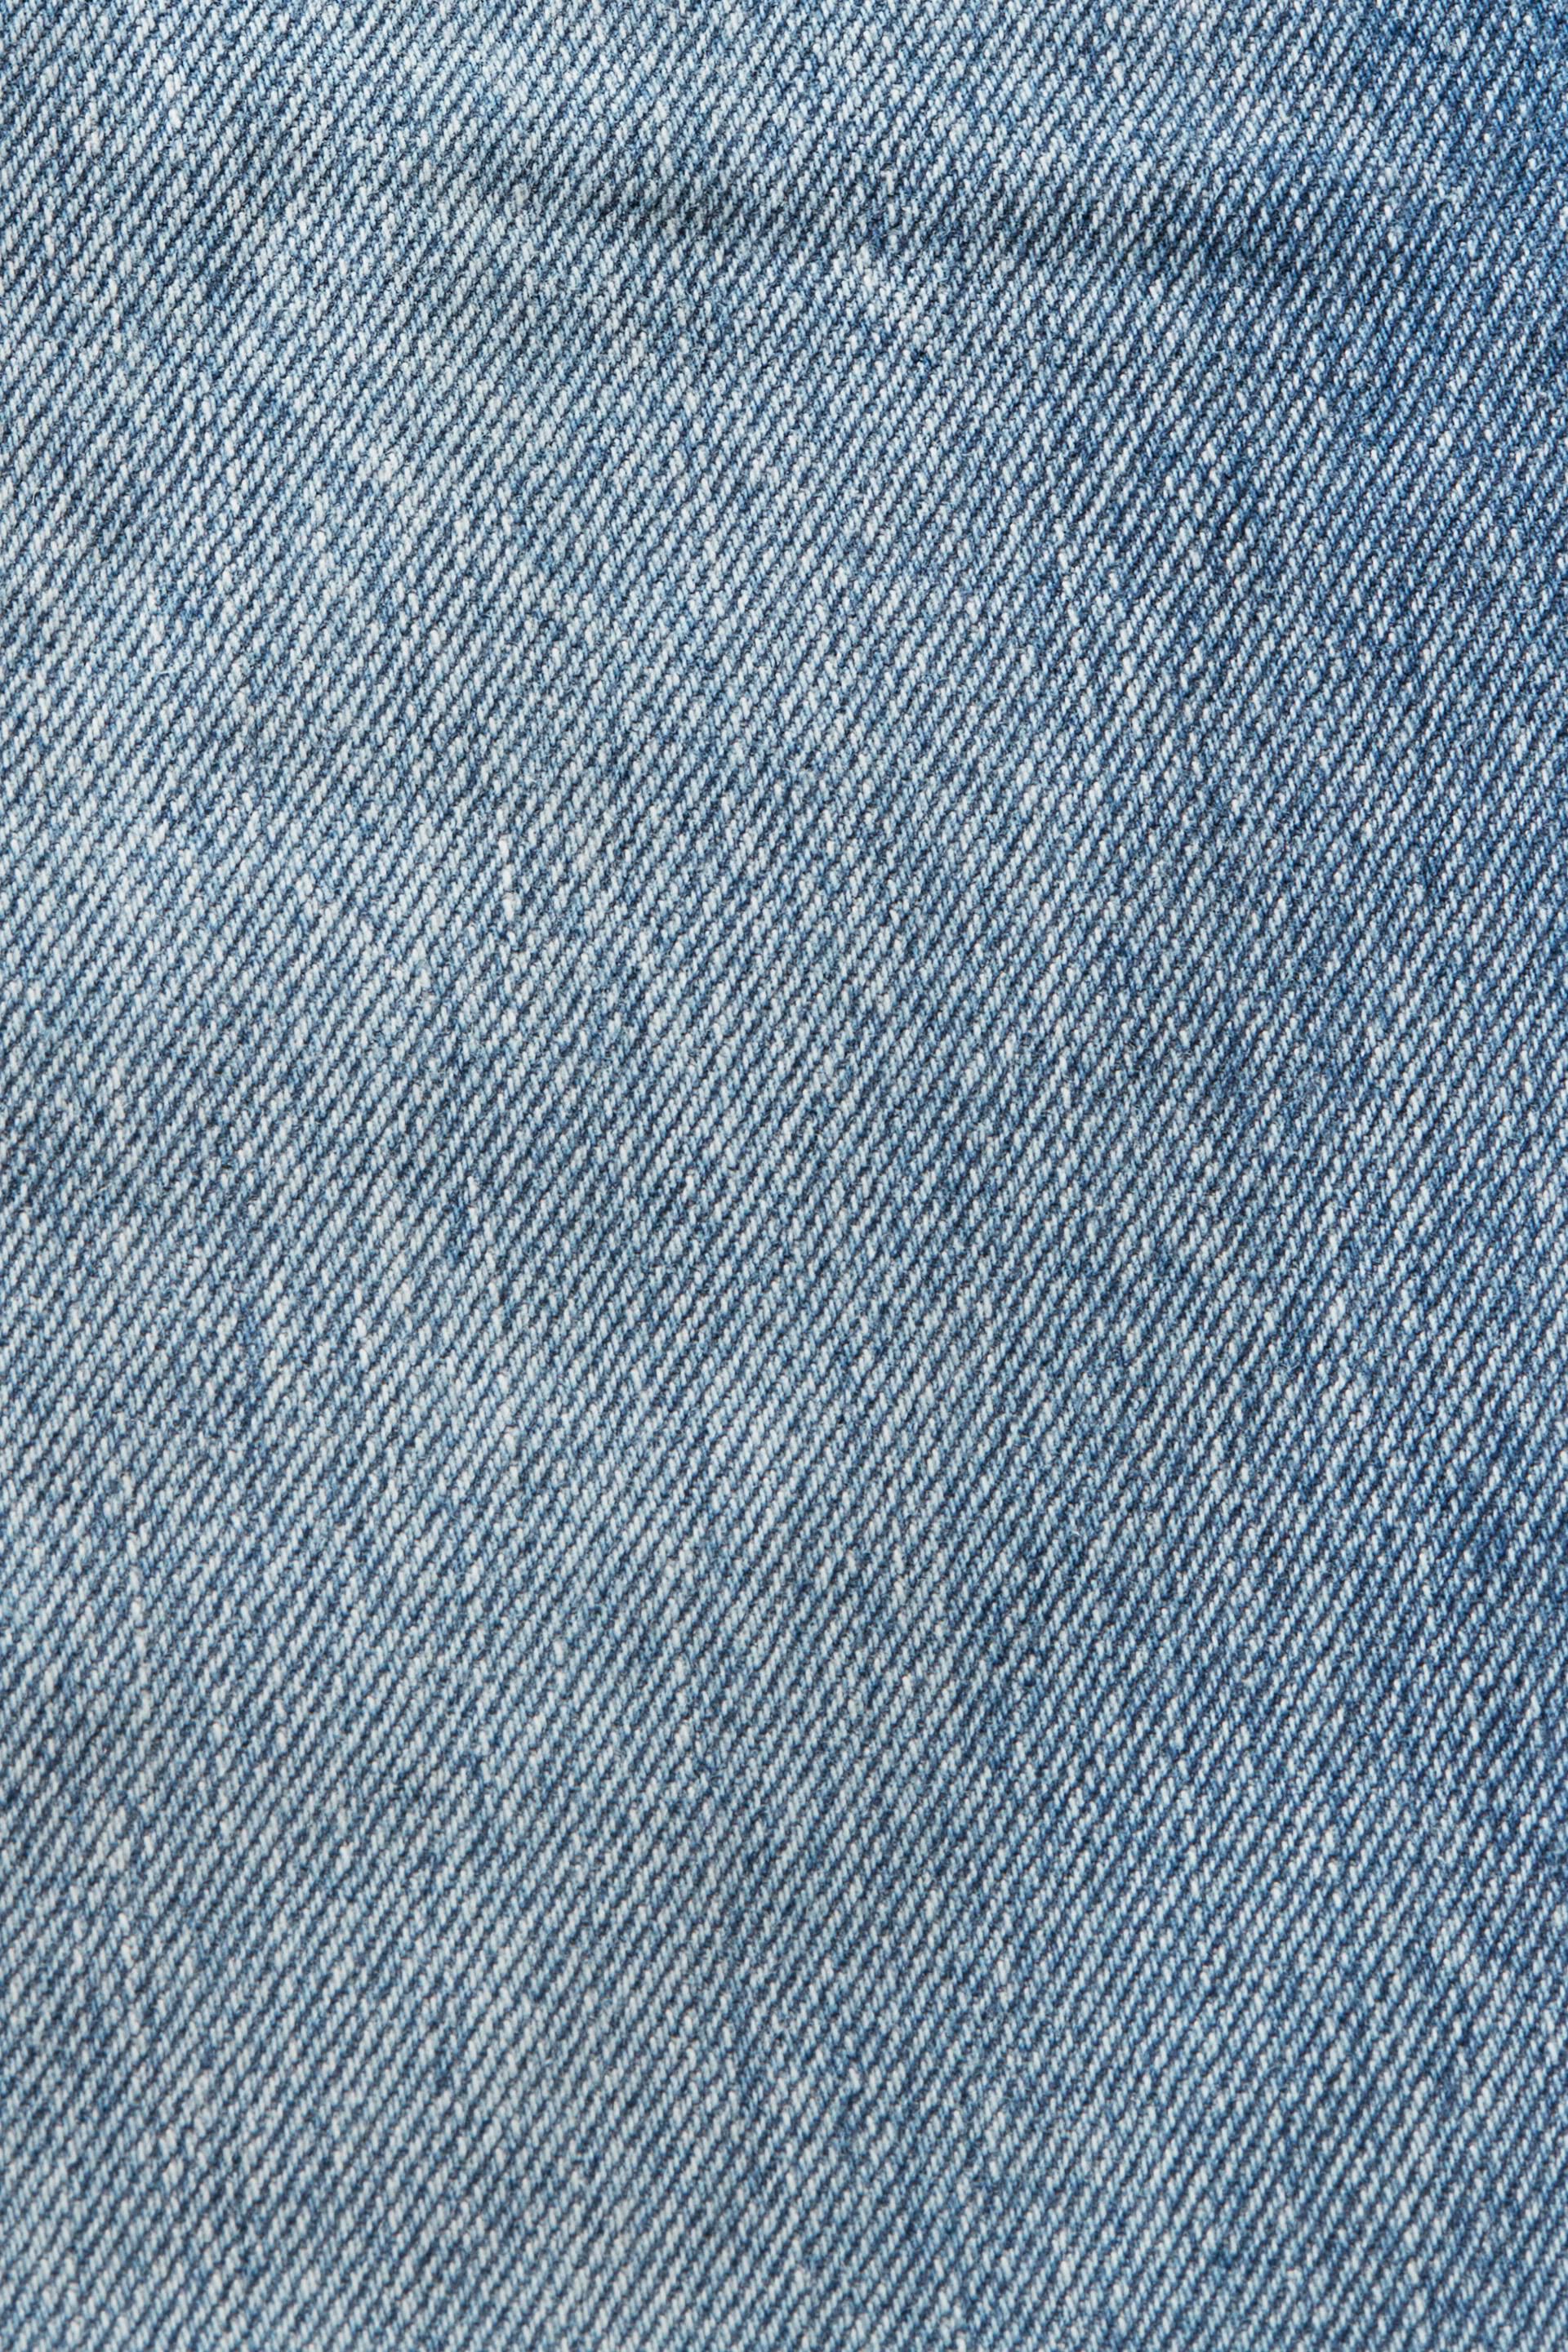 Esprit 100 gerader Baumwolle % Passform, Carpenter-Jeans mit